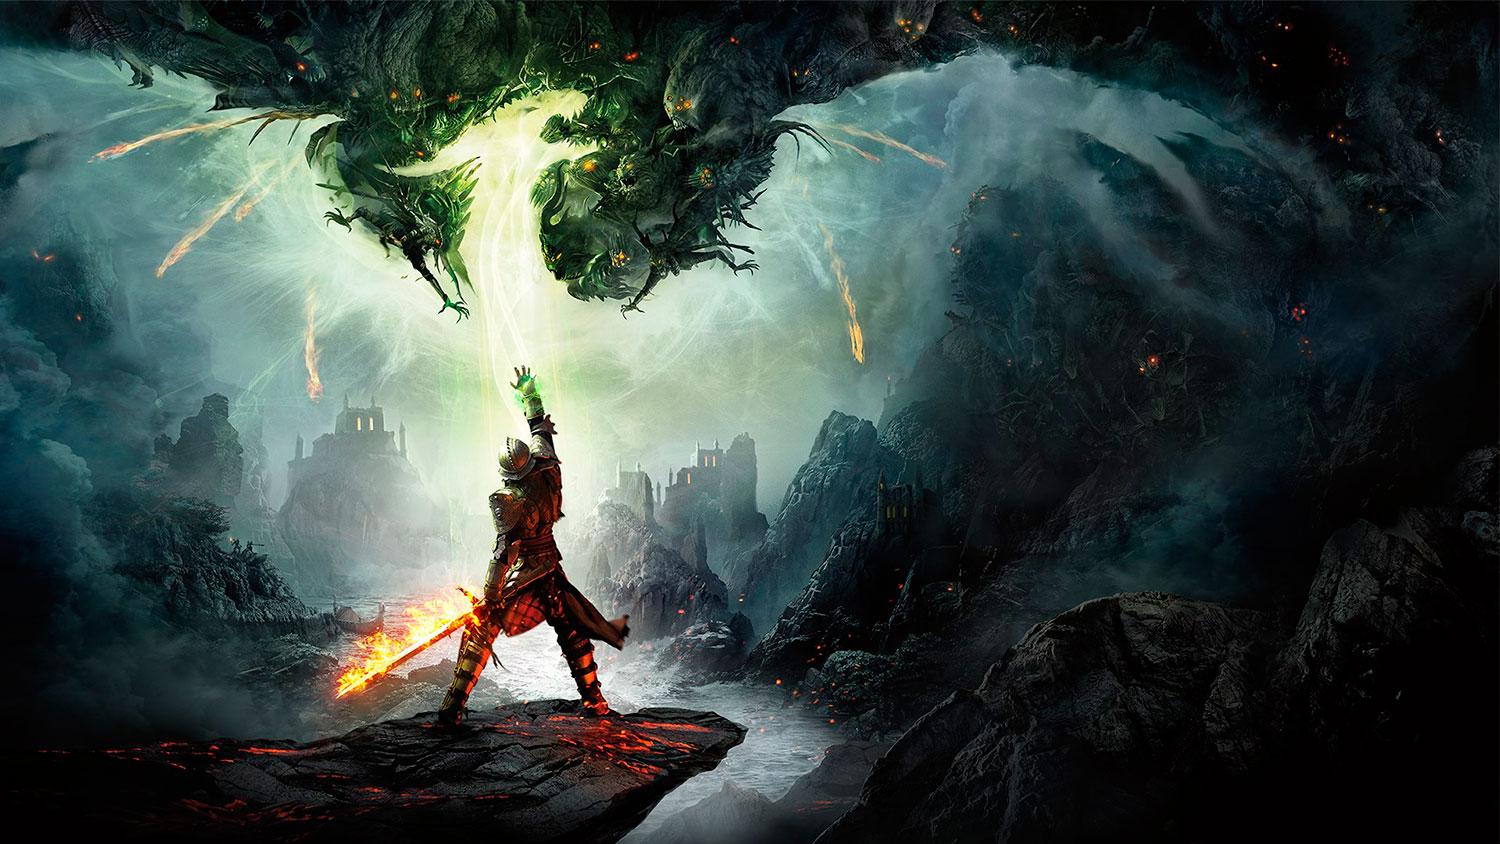 El nombre de la serie Dragon Age se generó aleatoriamente para un juego sin dragones